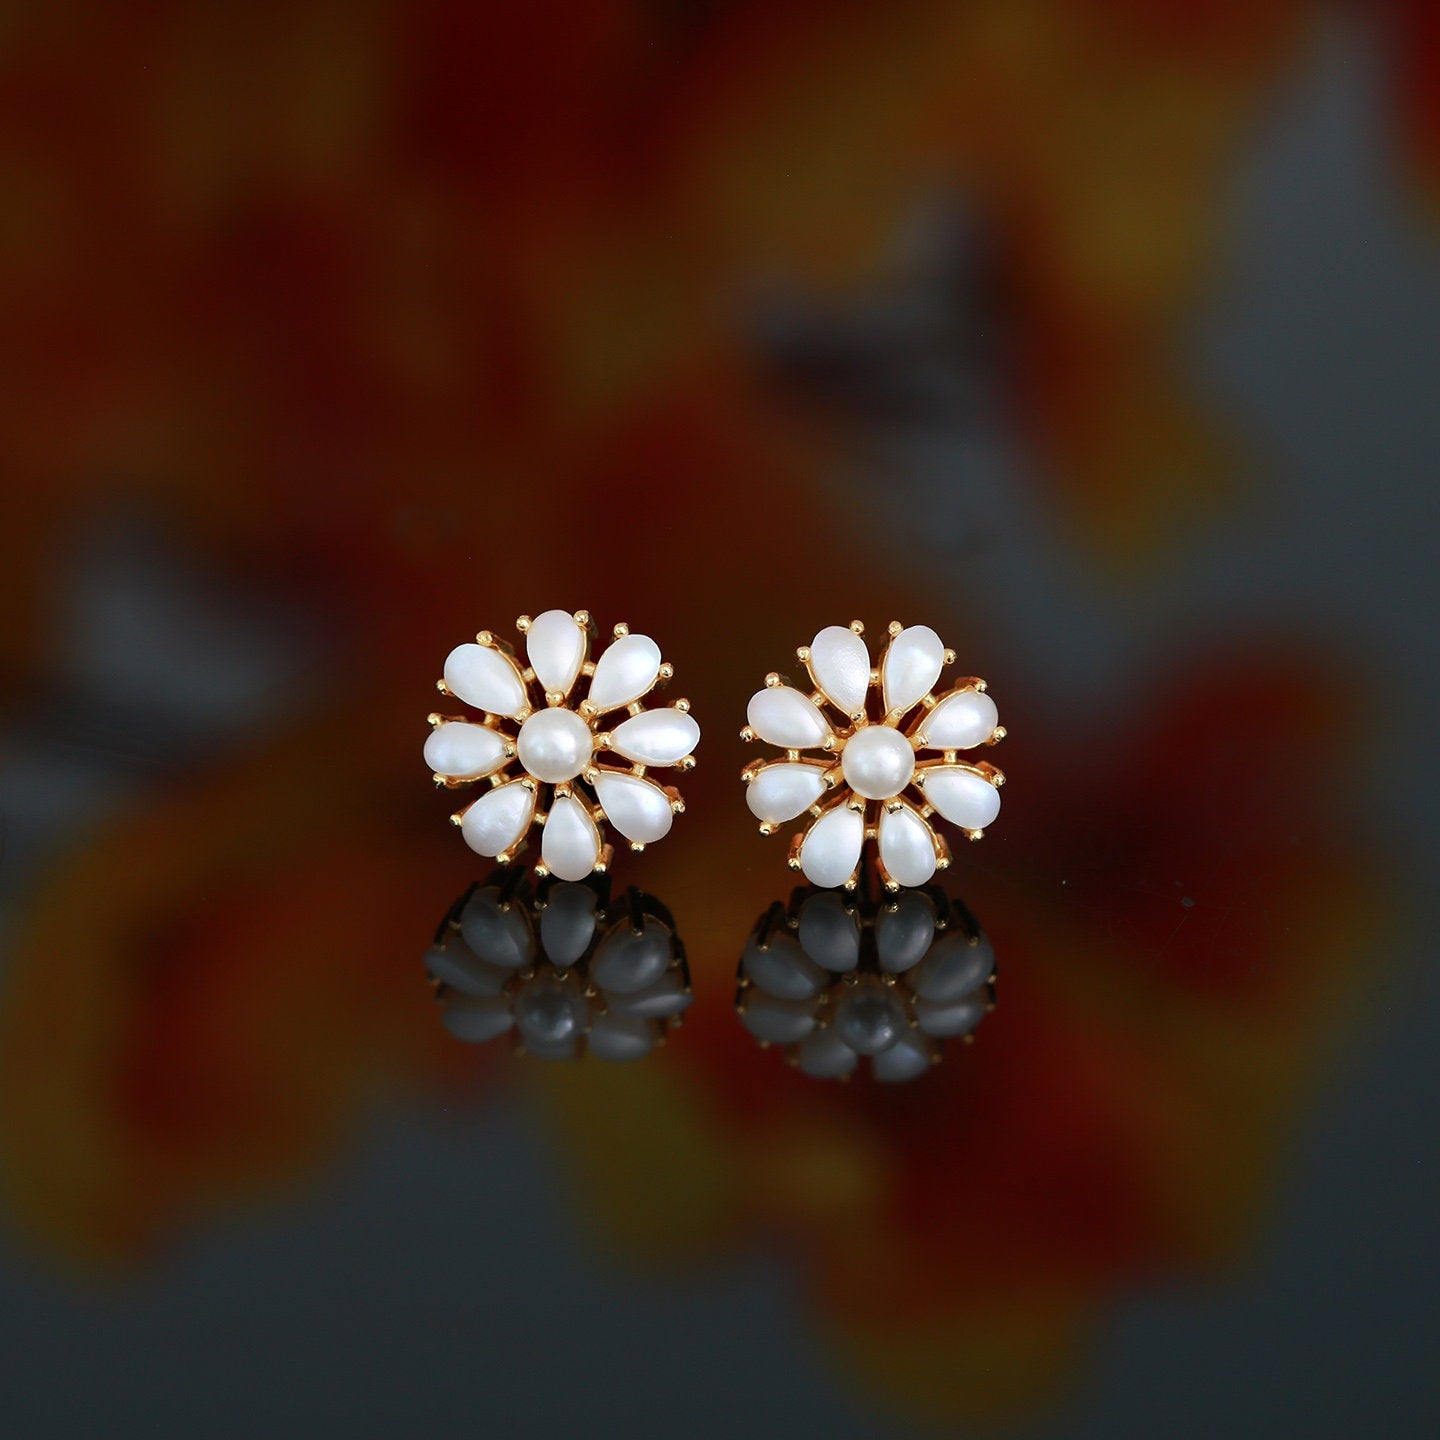 Pearl Flower Stud Earrings in Gold Setting | Real Pearl Stud Earrings 18K Gold Pearl Earrings tops |Trendy Stud earrings |Wedding Earrings